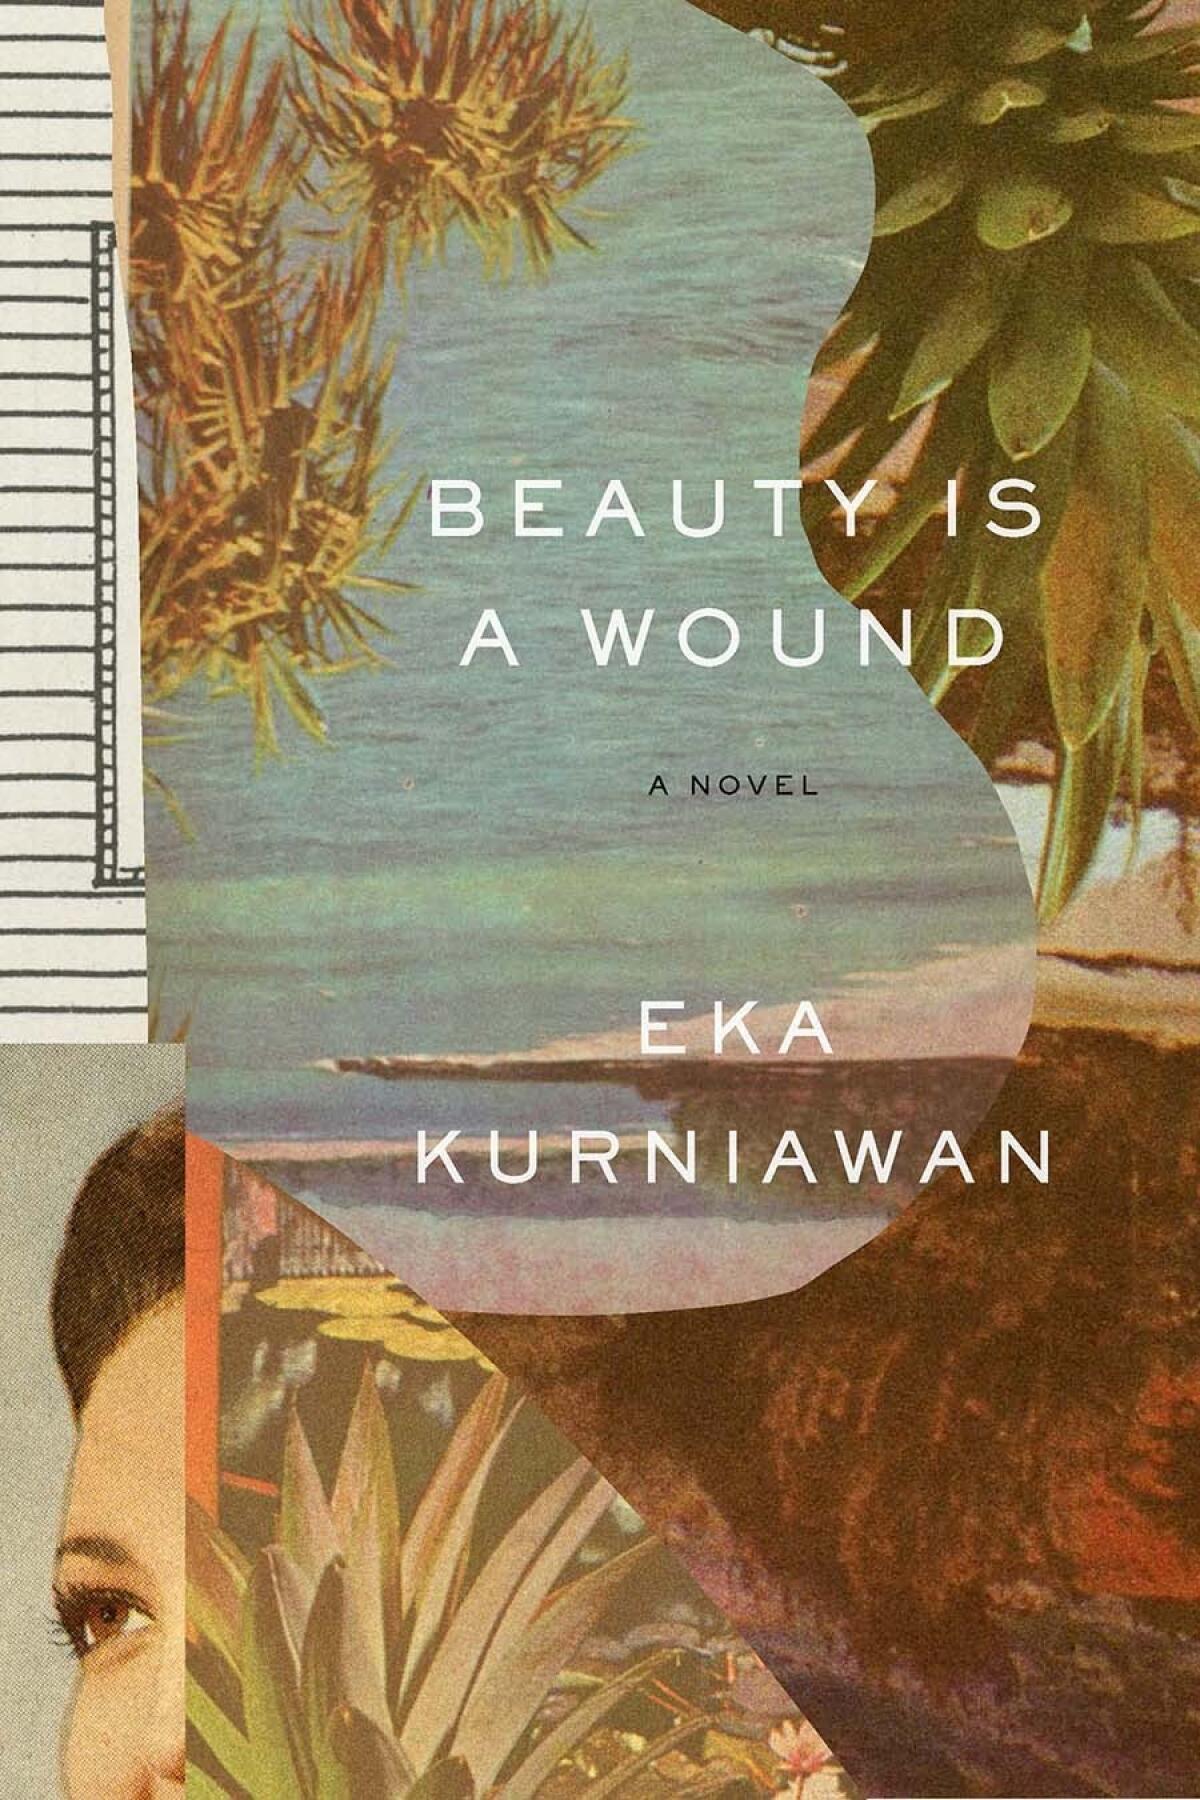 "Beauty Is a Wound" by Eka Kurniawan